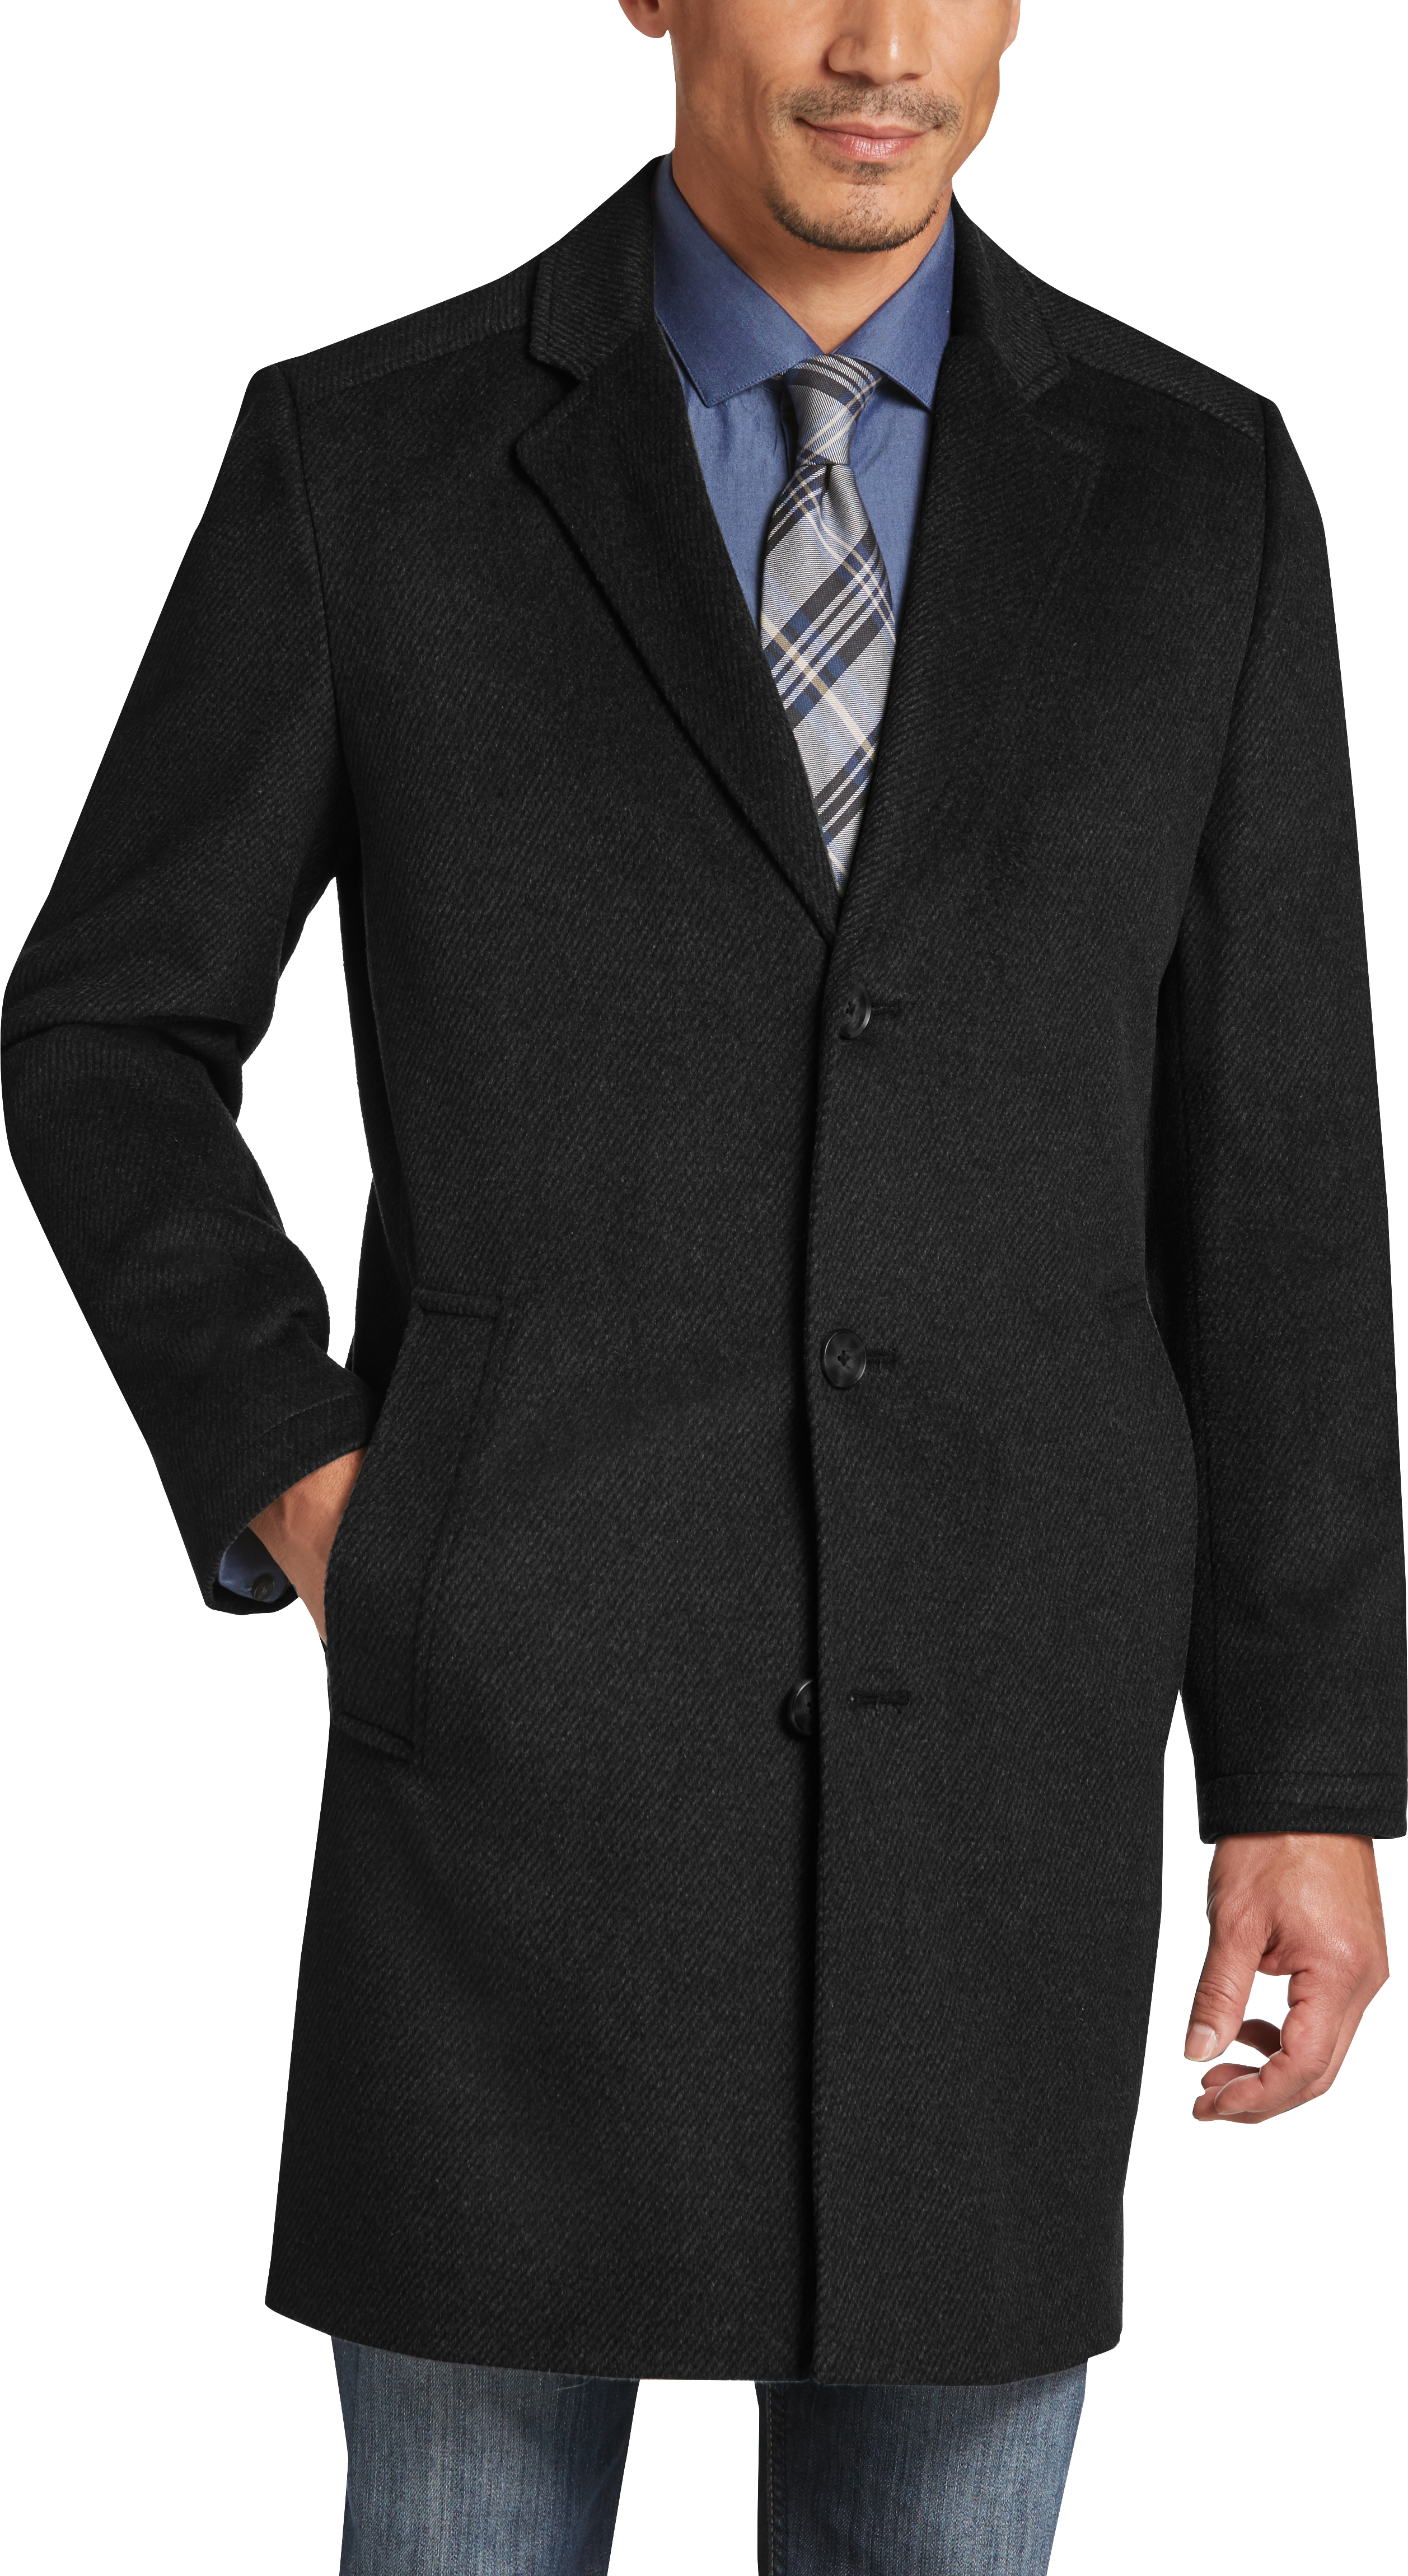 Egara Charcoal Gray Slim Fit Topcoat - Men's Topcoats | Men's Wearhouse